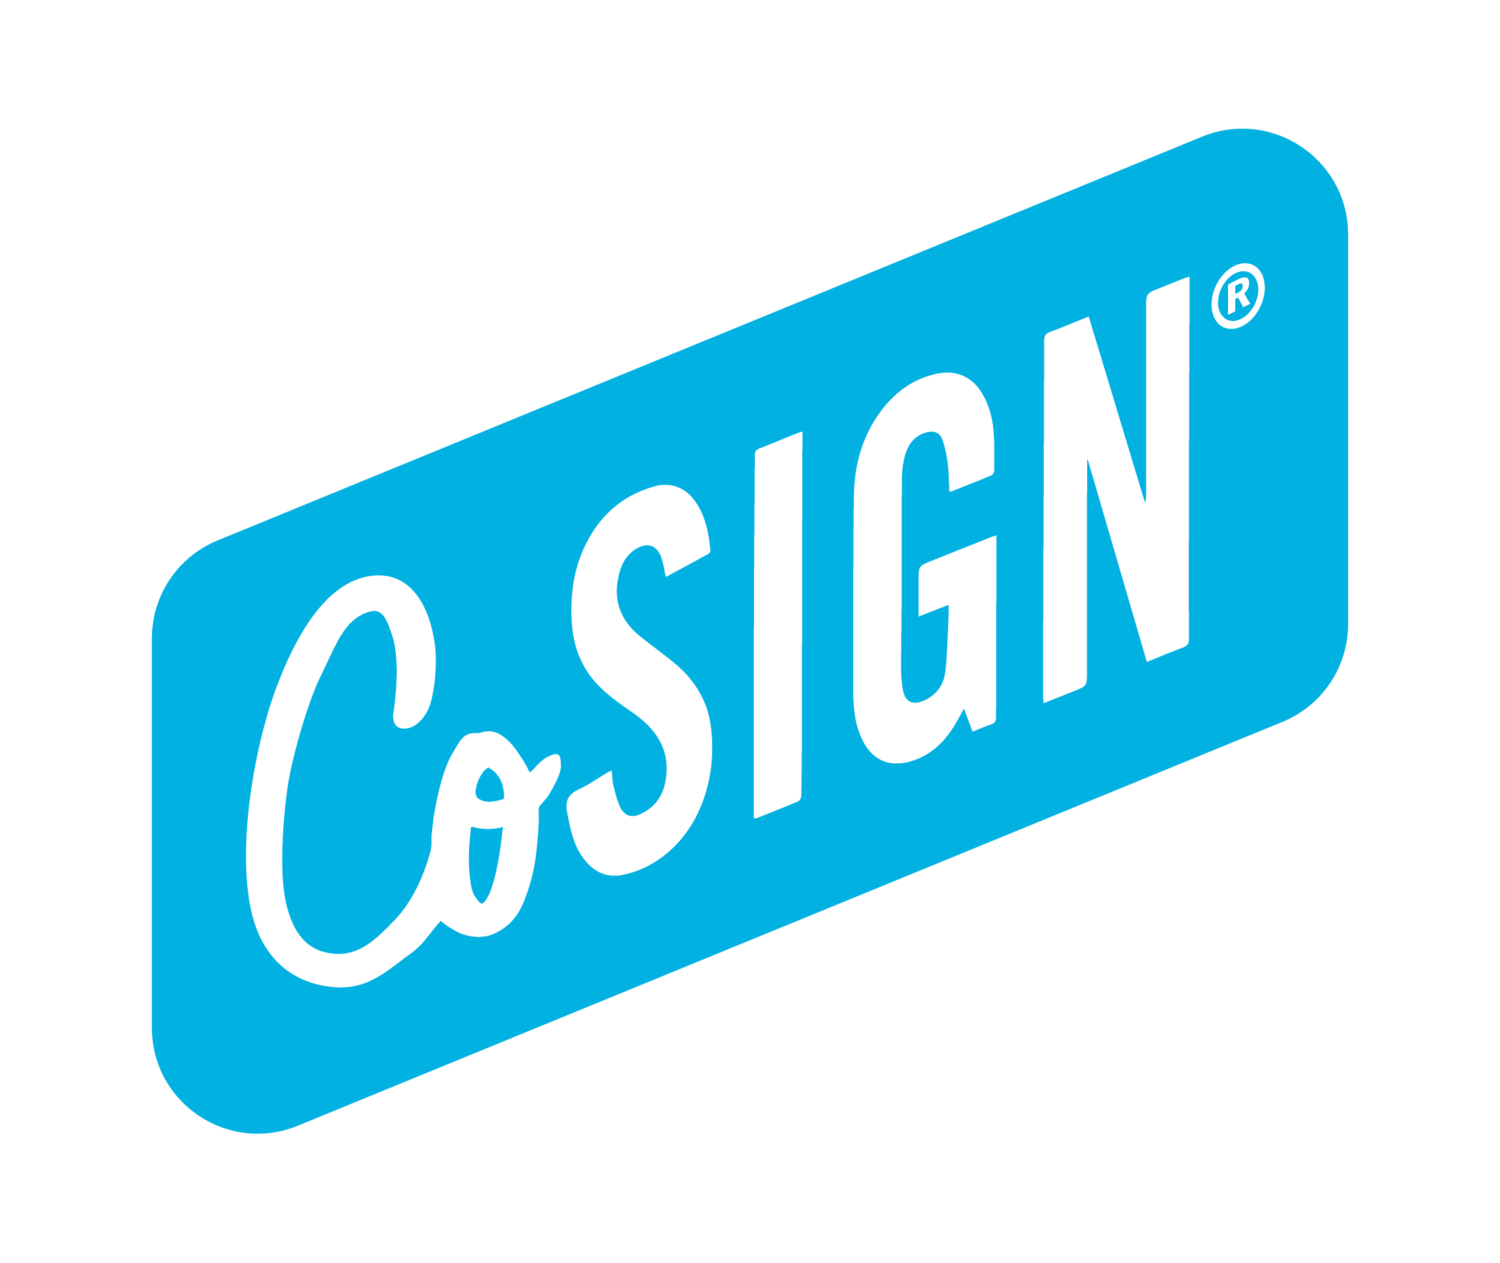 CoSign Cincy